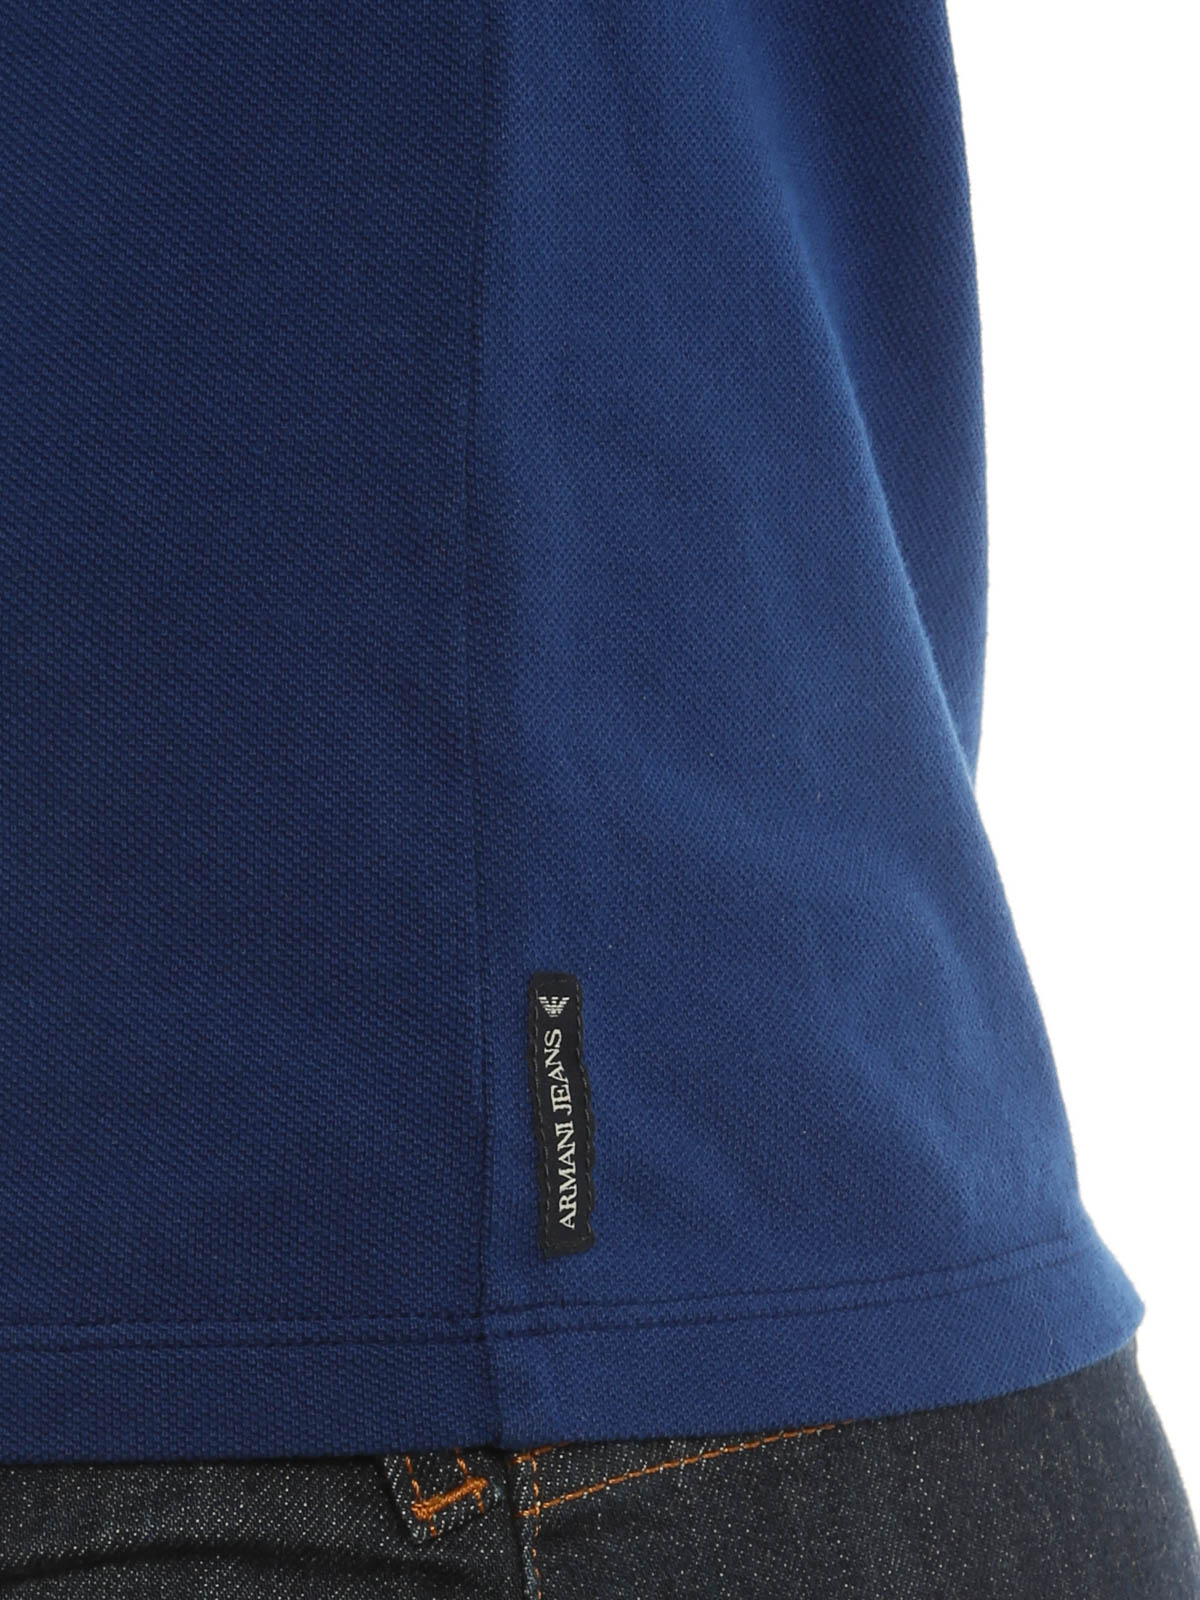 Siege scramble kompensation Polo shirts Armani Jeans - AJ Polo shirt - 06M9908 | Shop online at iKRIX